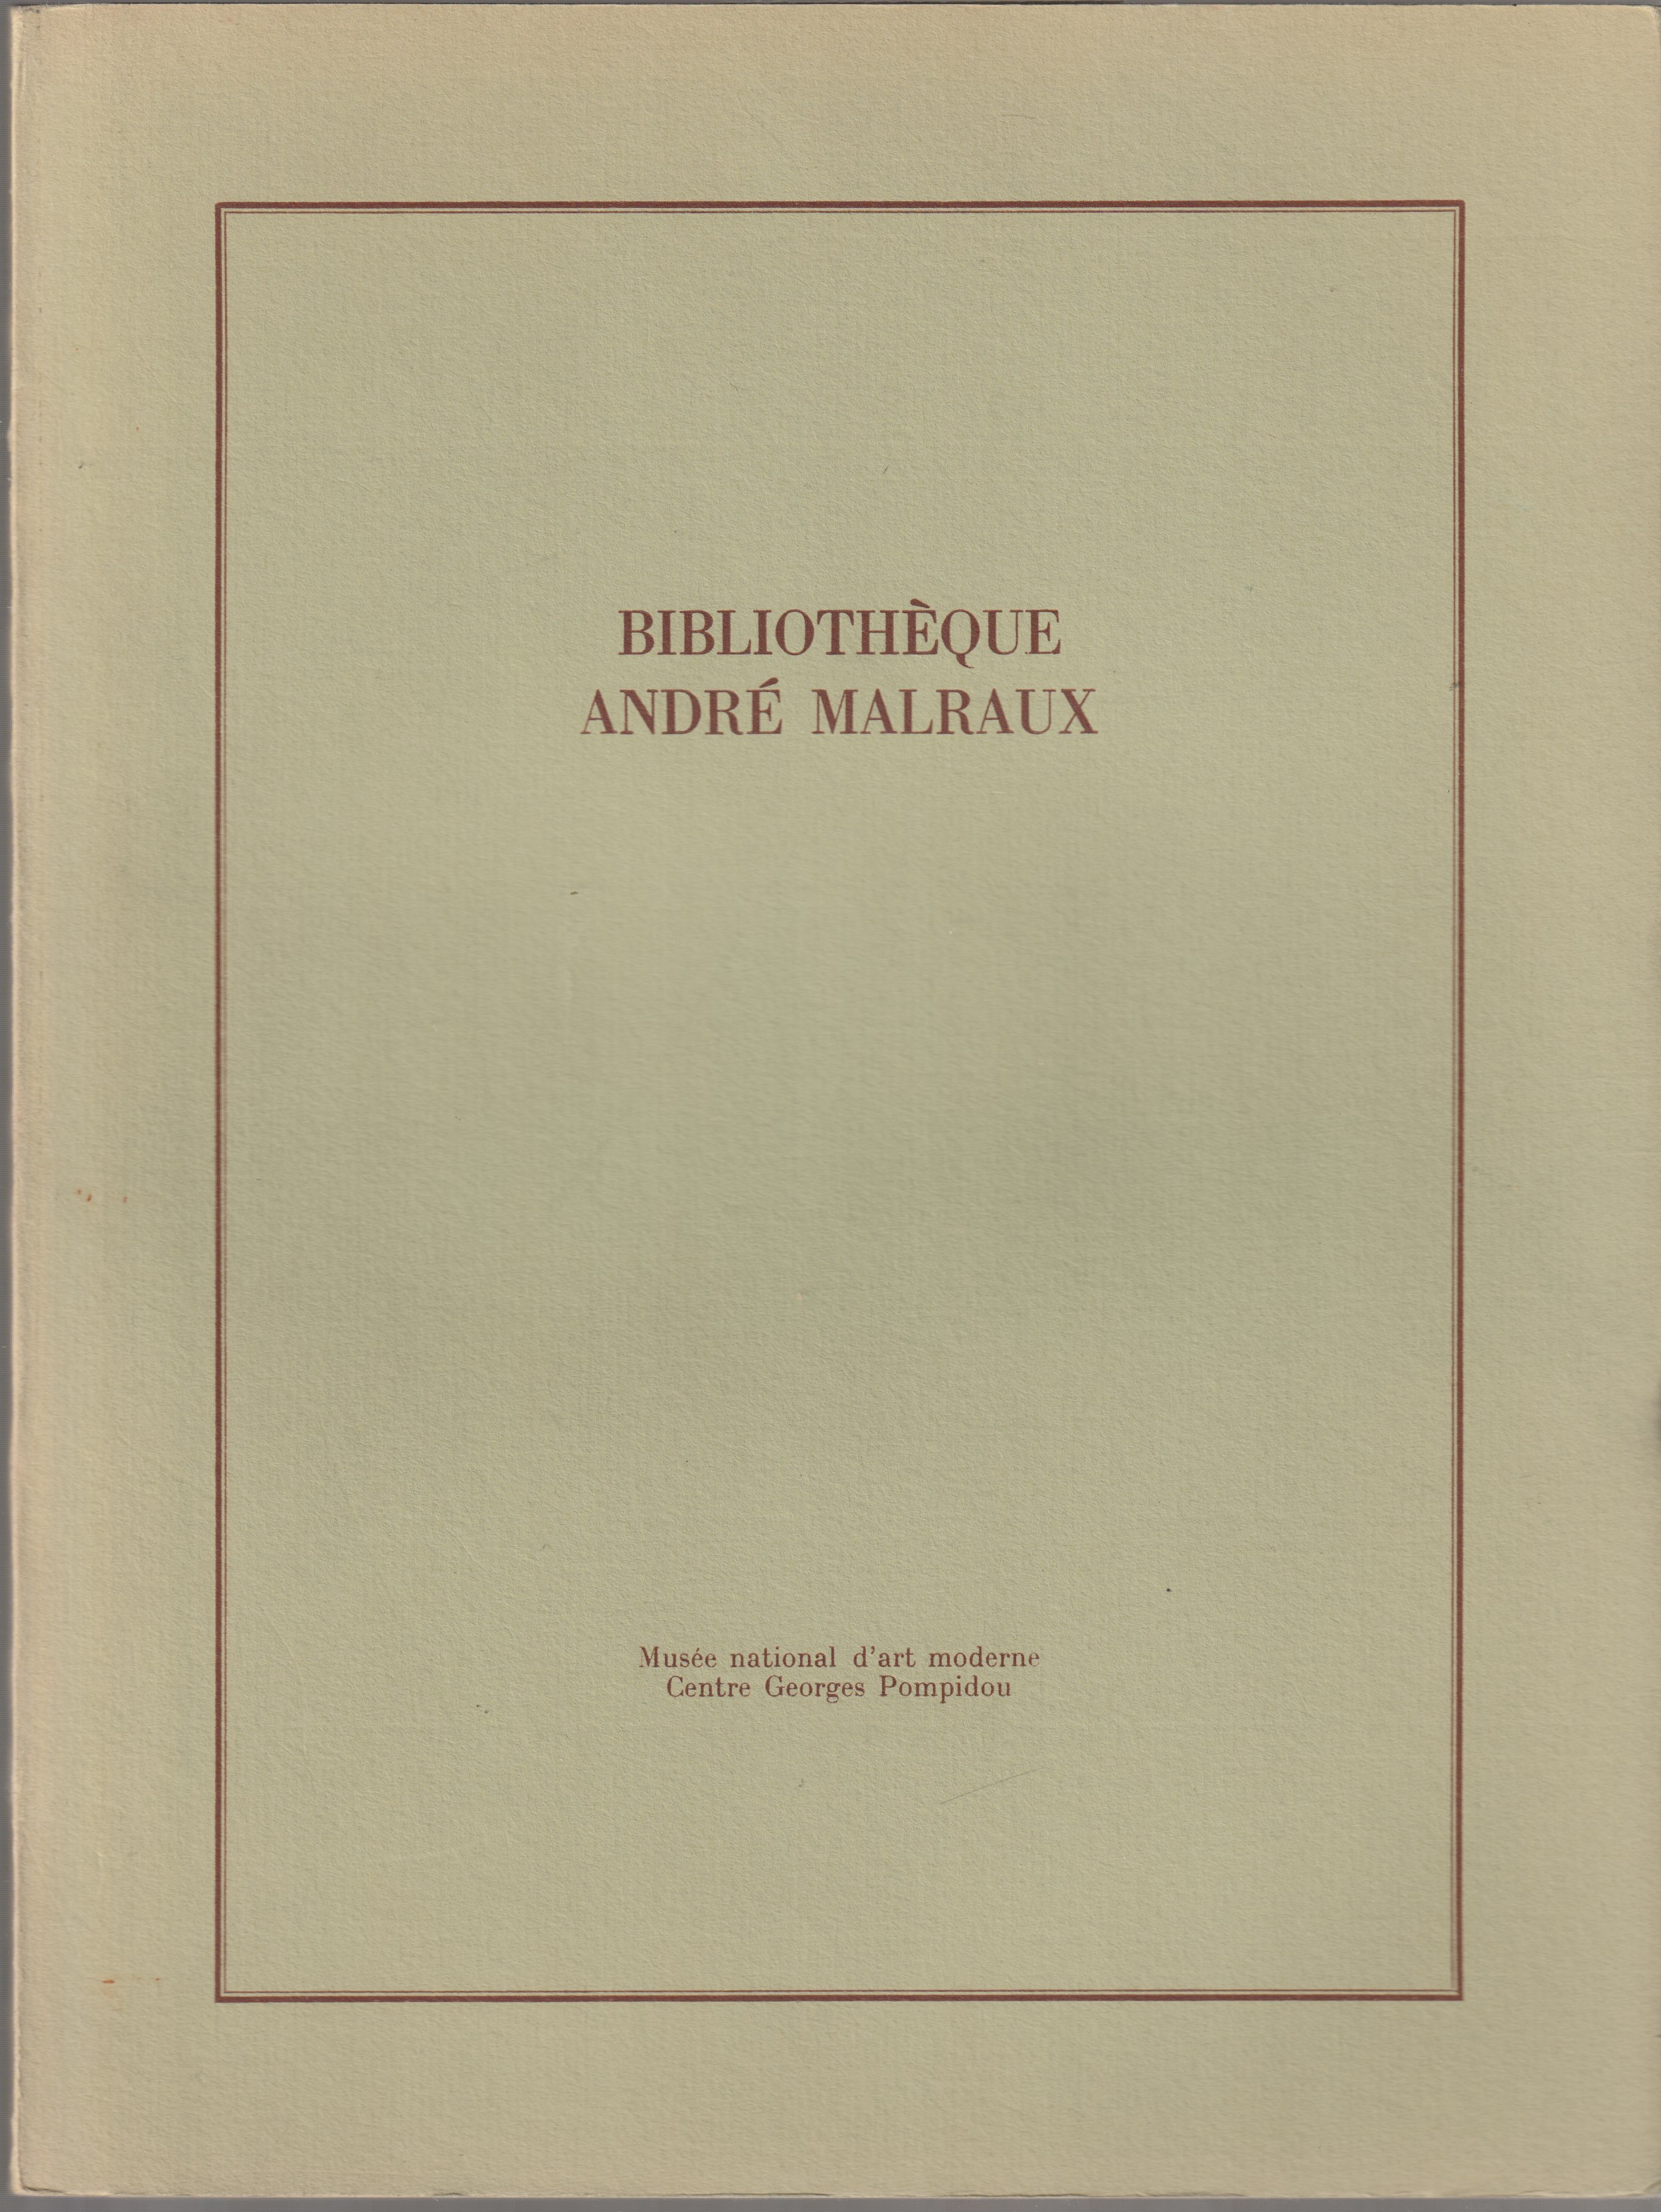 Bibliotheque Andre Malraux : inventaire sommaire des publications sur l'art